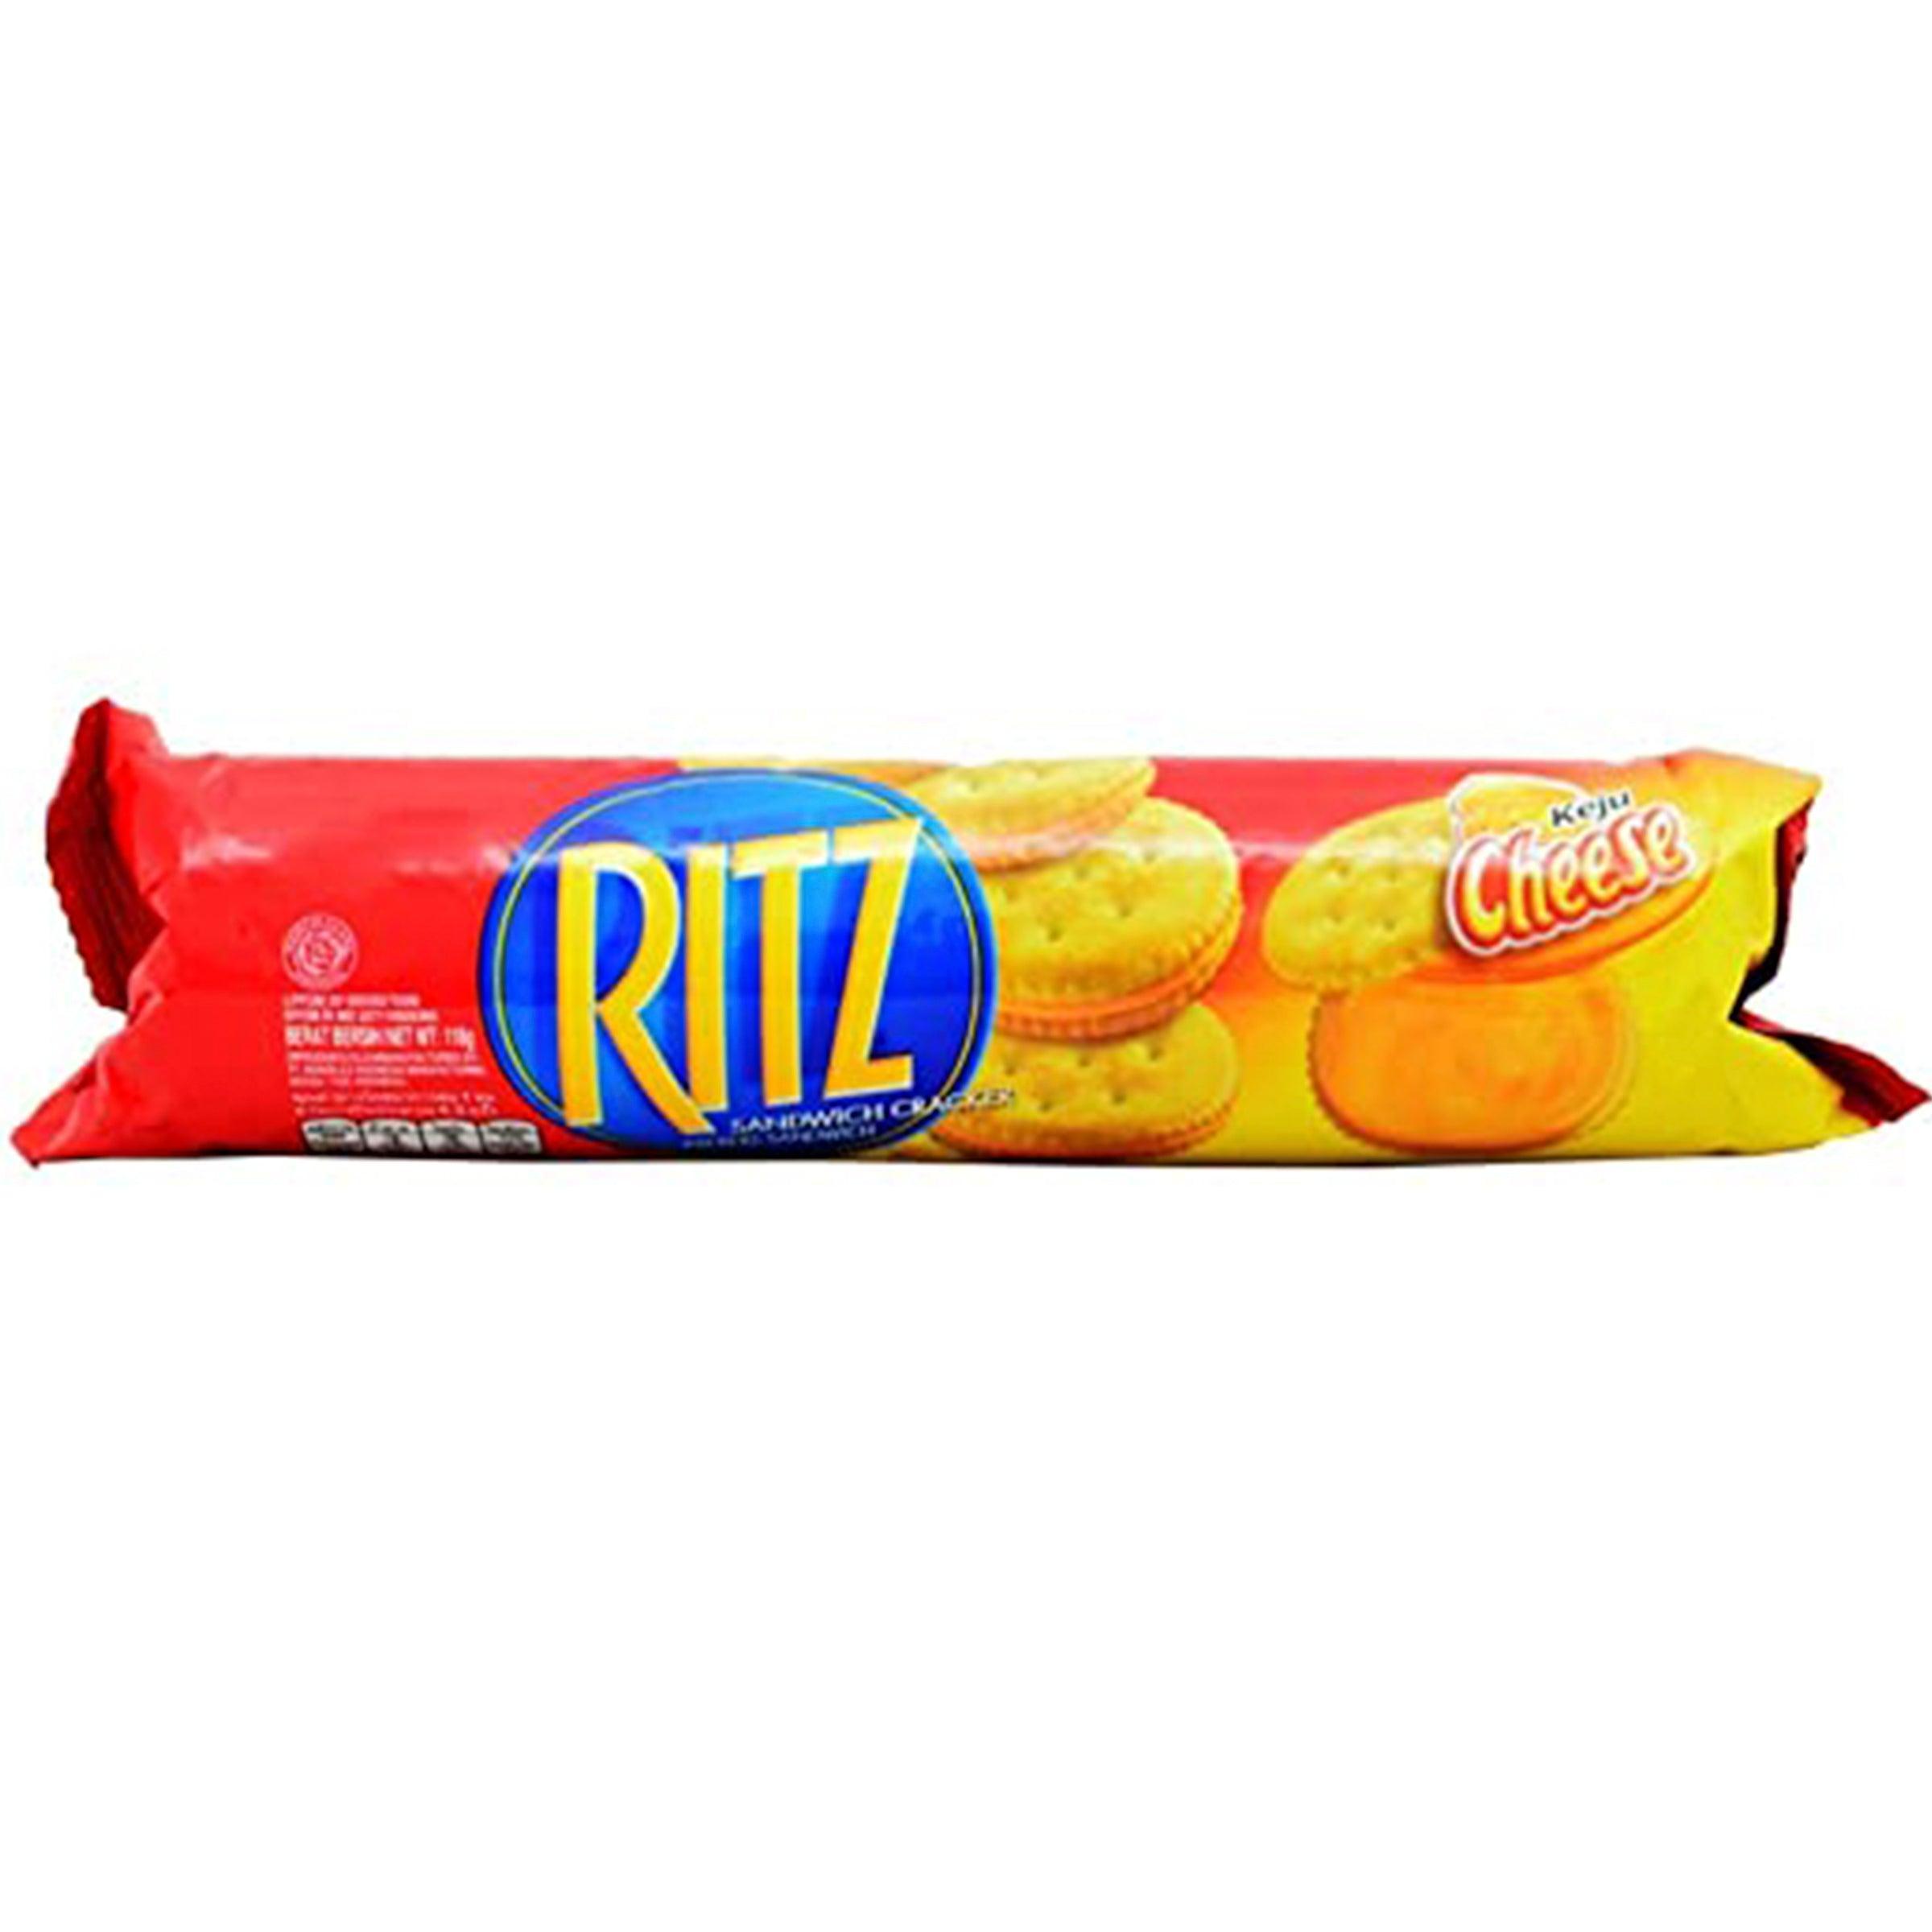 RITZ CHEESE CREAM SANDWICH CRUNCHY BISCUIT 118GM - Nazar Jan's Supermarket